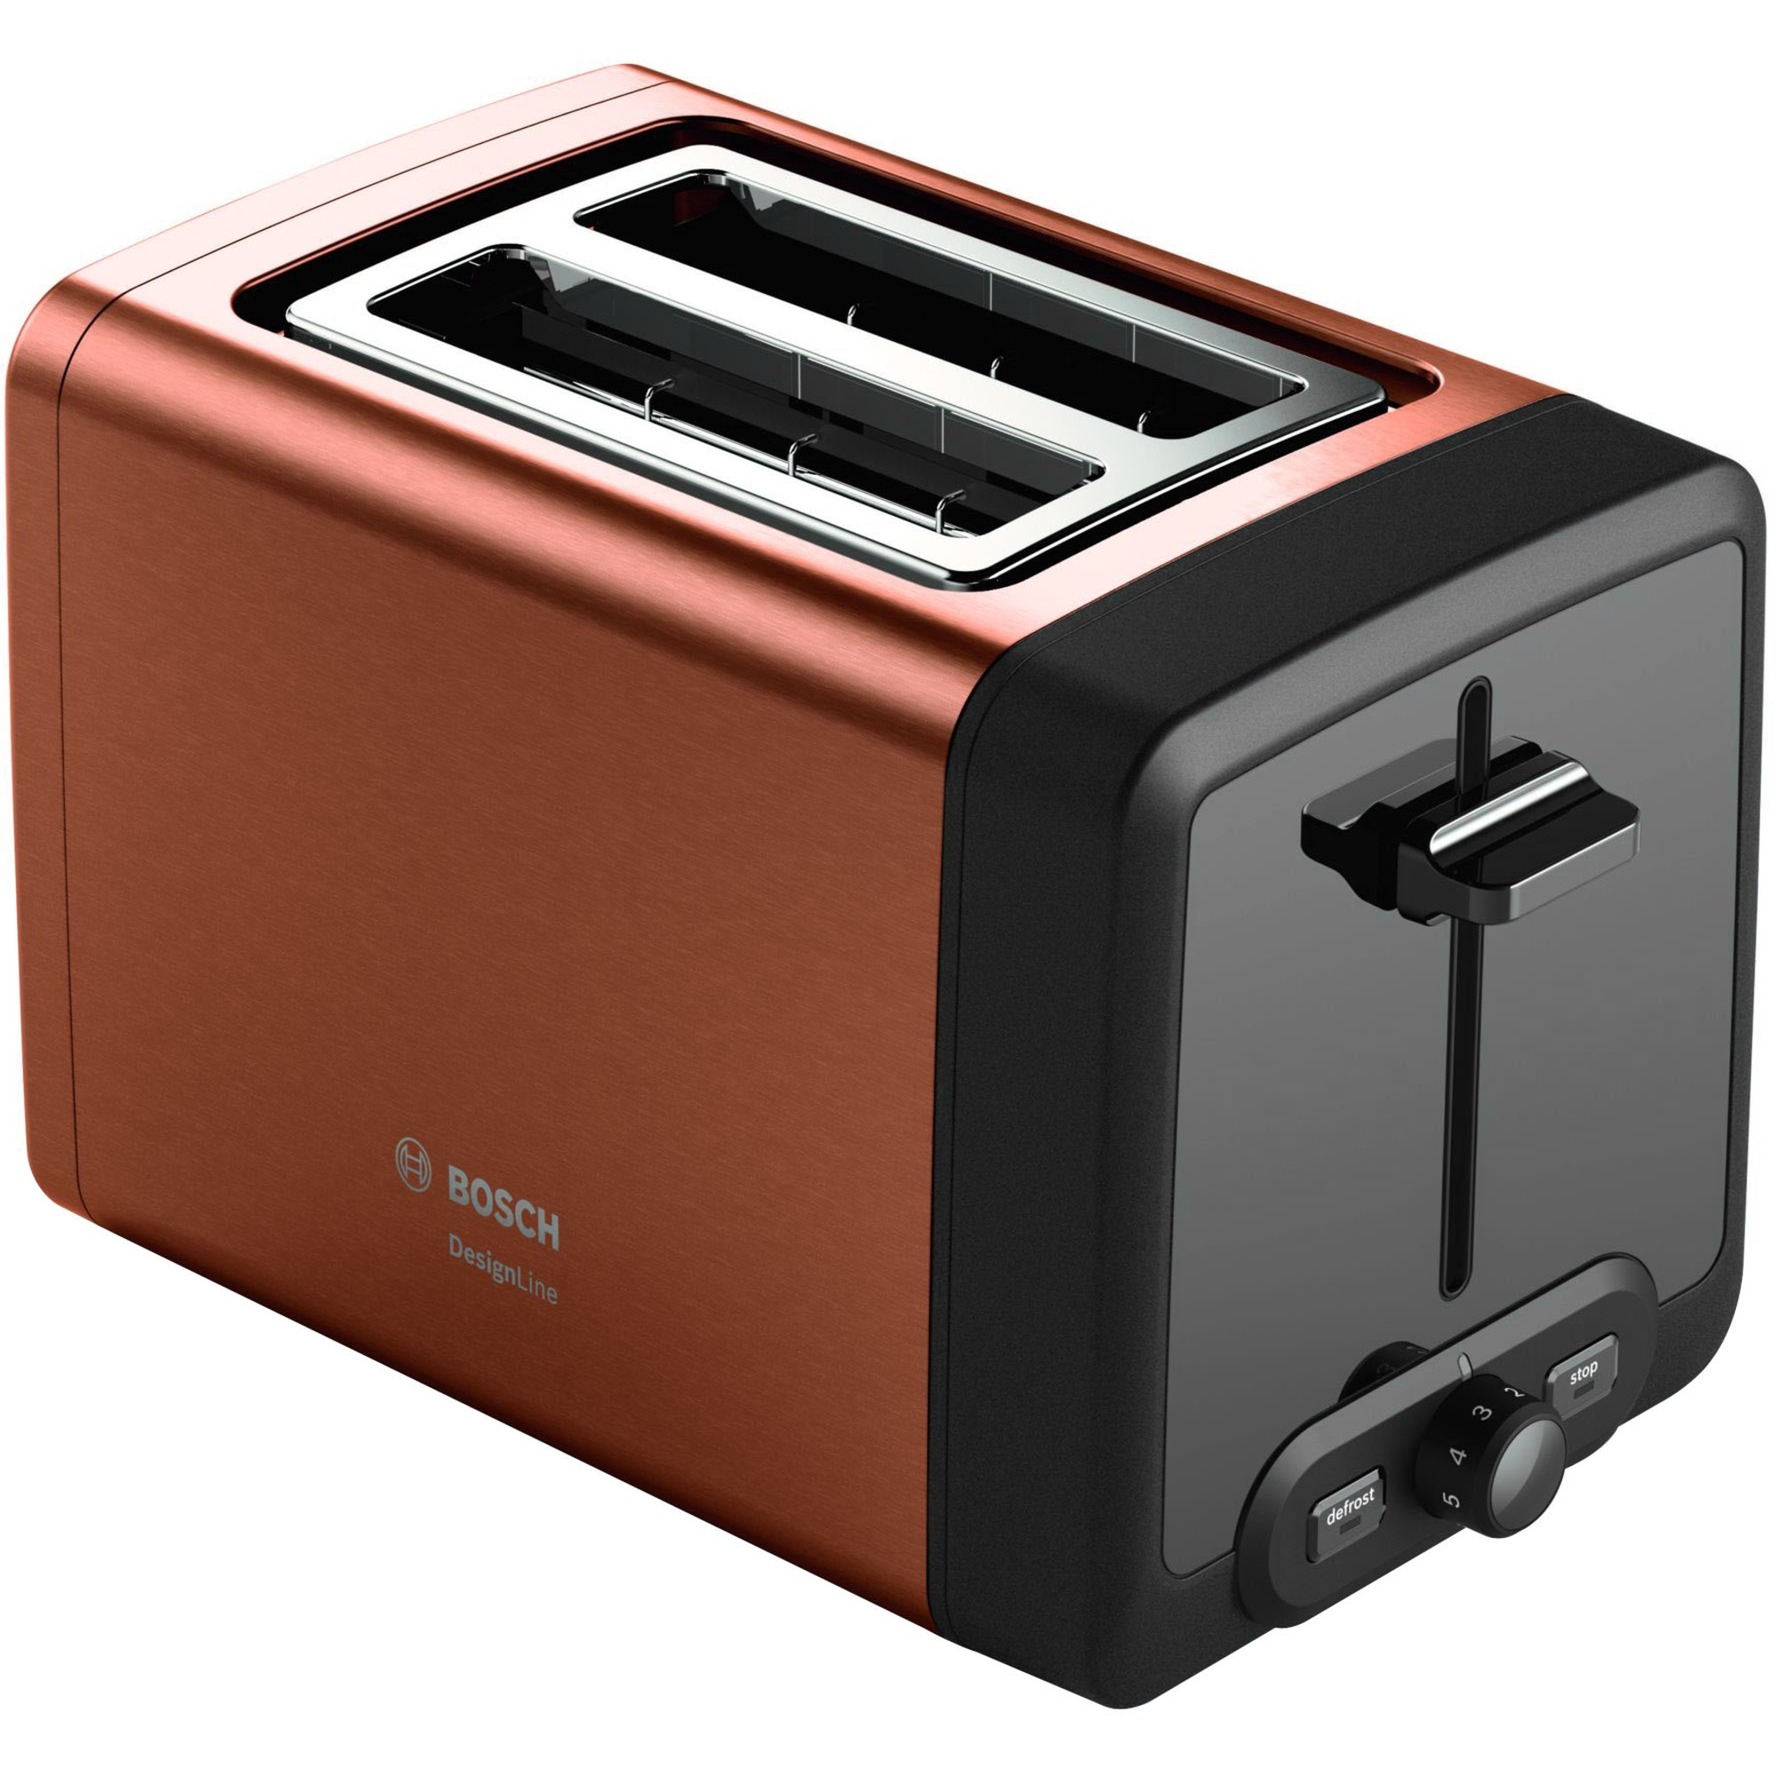 Image of Alternate - Kompakt-Toaster DesignLine TAT4P429DE online einkaufen bei Alternate